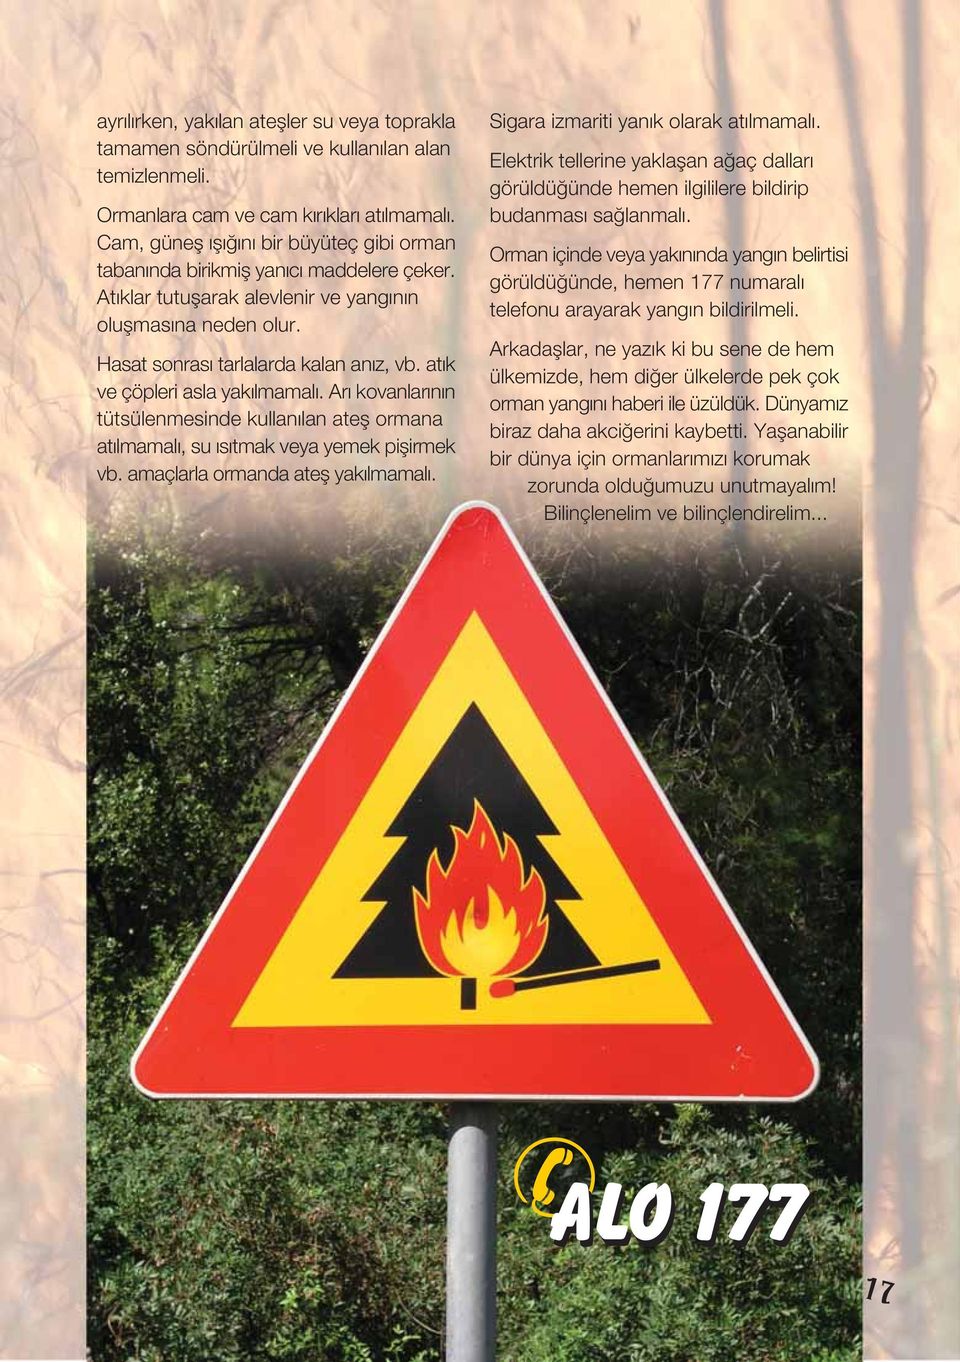 atık ve çöpleri asla yakılmamalı. Arı kovanlarının tütsülenmesinde kullanılan atefl ormana atılmamalı, su ısıtmak veya yemek piflirmek vb. amaçlarla ormanda atefl yakılmamalı.